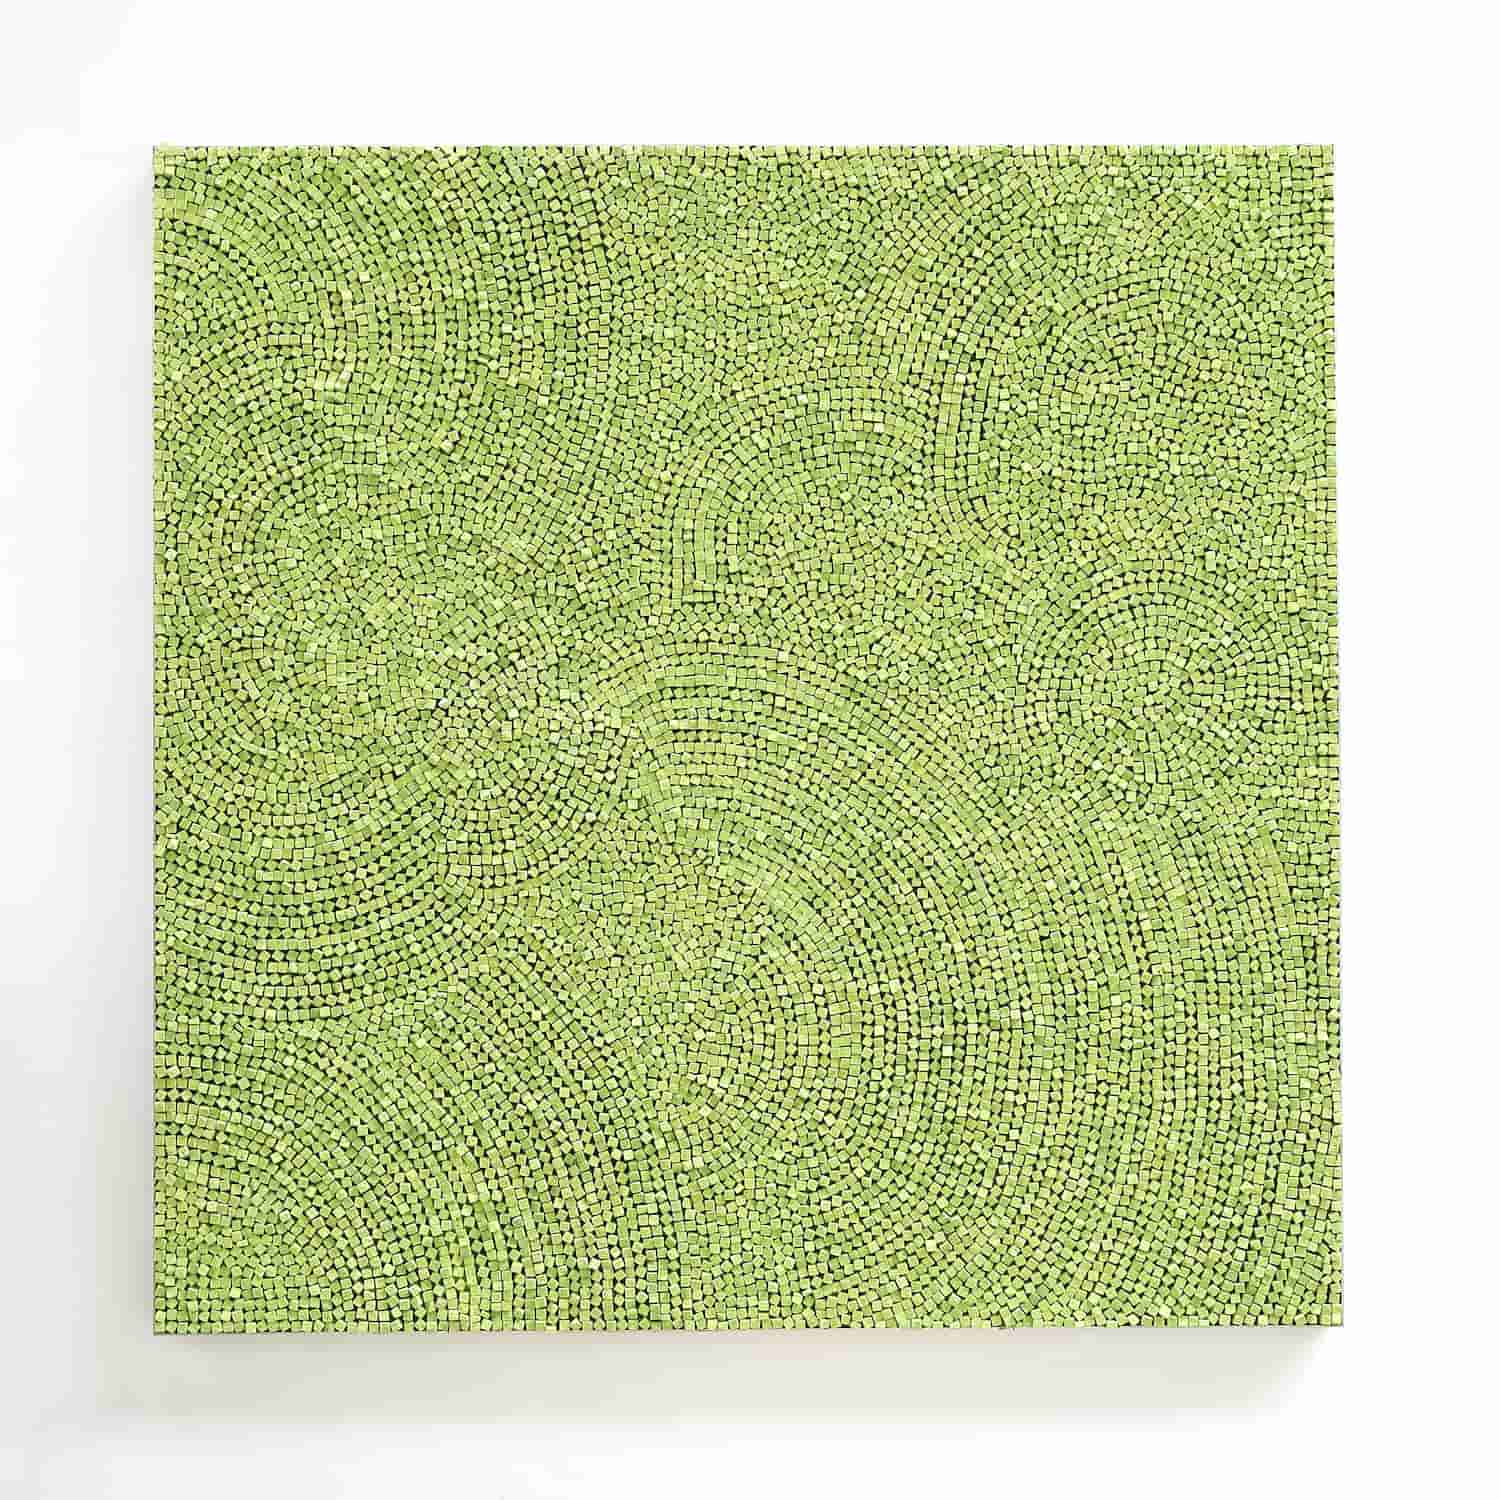 „o. T.“, grüne Kreide, 150 x 150 cm, 2021